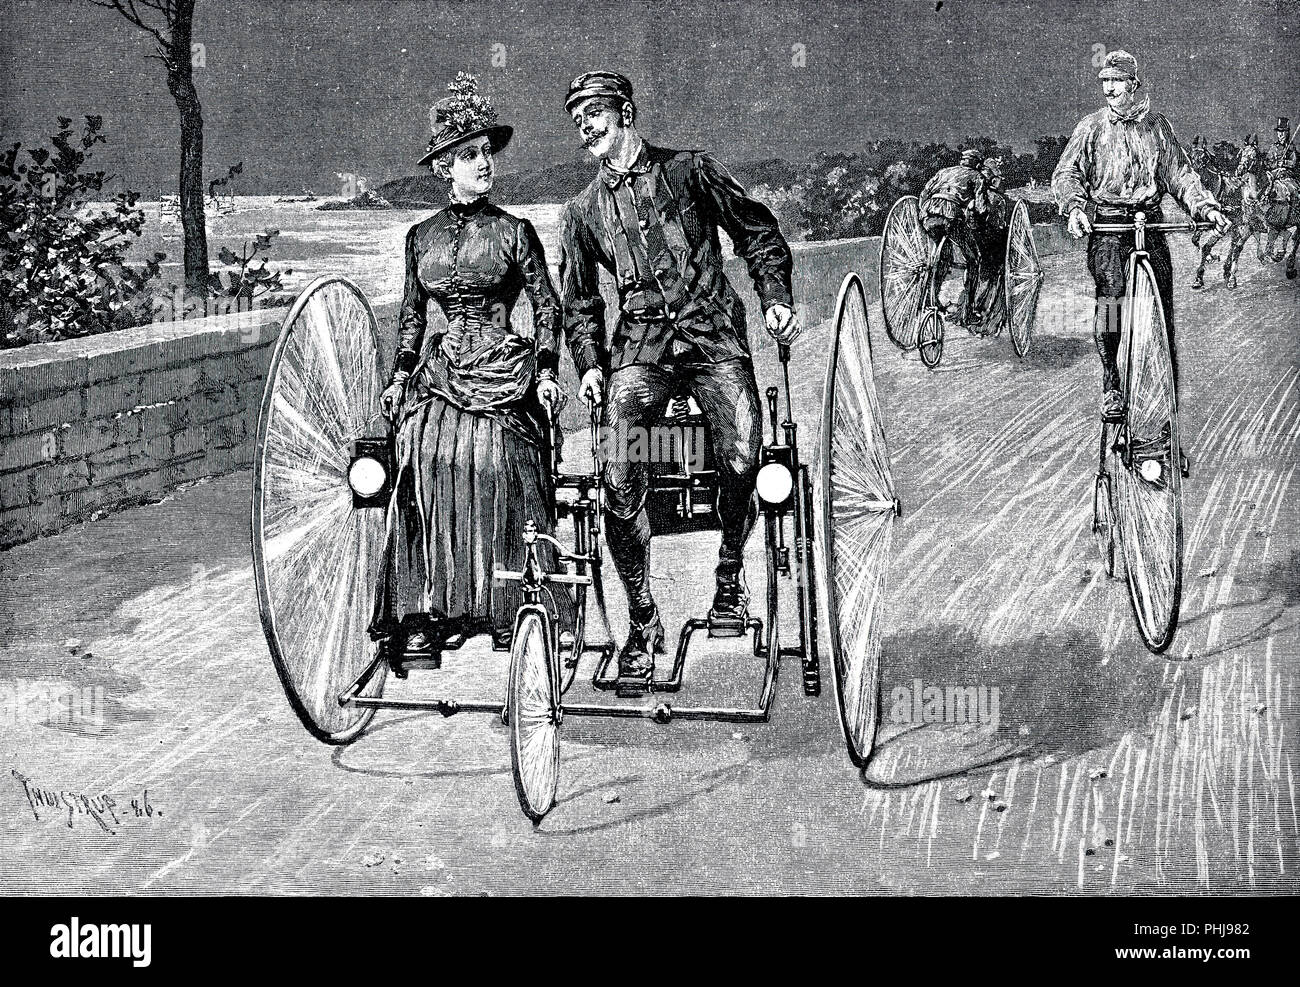 1800 ciclistas. Una ilustración del año 1886 donde una joven pareja está sentado en una bicicleta como vehículo. Pueden ambos pedales de la bicicleta tiene dos ruedas grandes en la parte posterior y una pequeña rueda en la parte delantera. A la derecha, un hombre montado en una bicicleta Penny Farthing. 1886 Foto de stock